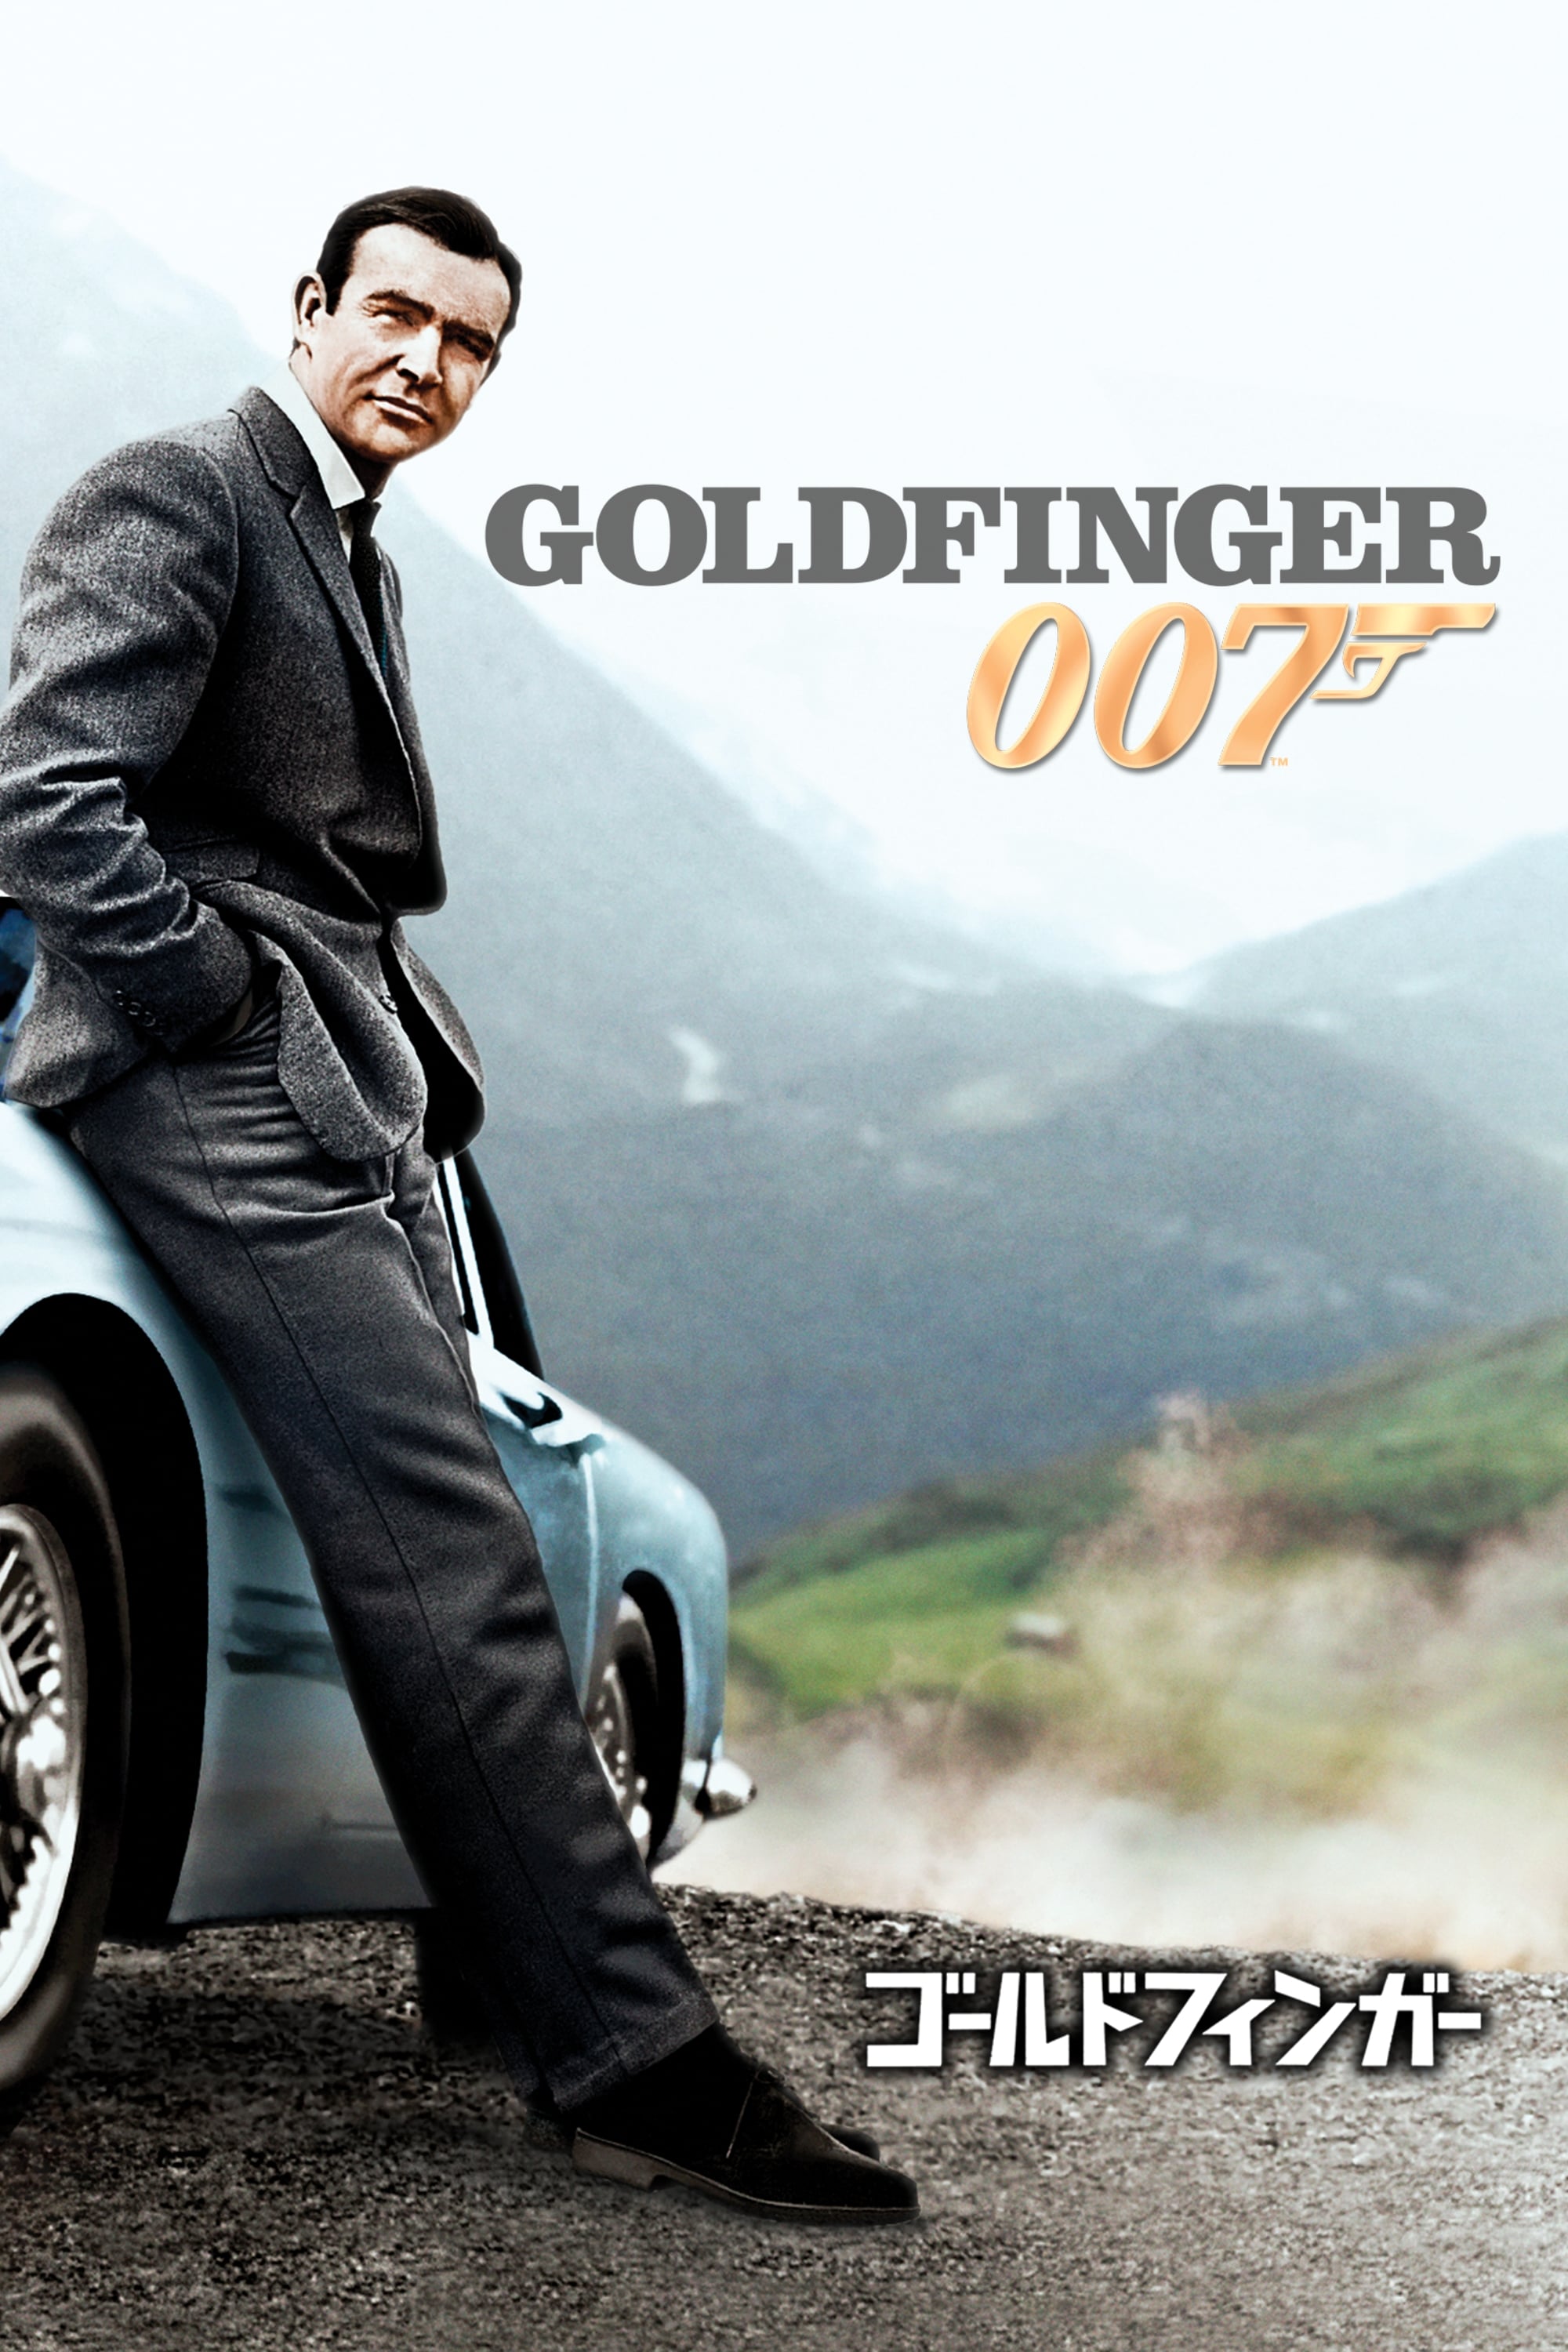 007／ゴールドフィンガー (1964) - ポスター画像 — The Movie Database